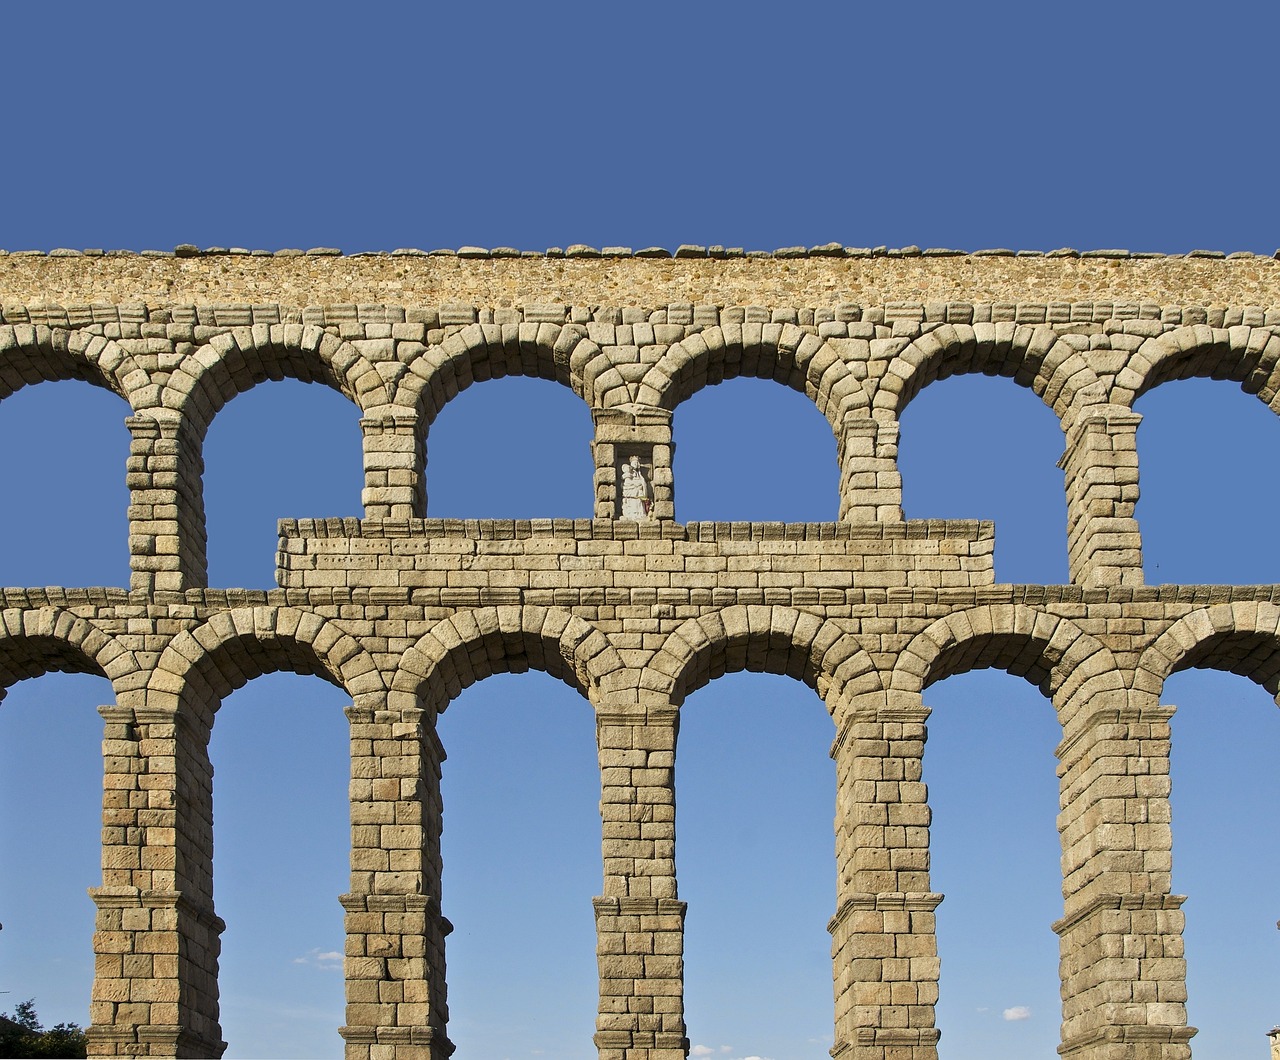 Descubriendo el Acueducto de Segovia: ¡Cuenta sus bloques!